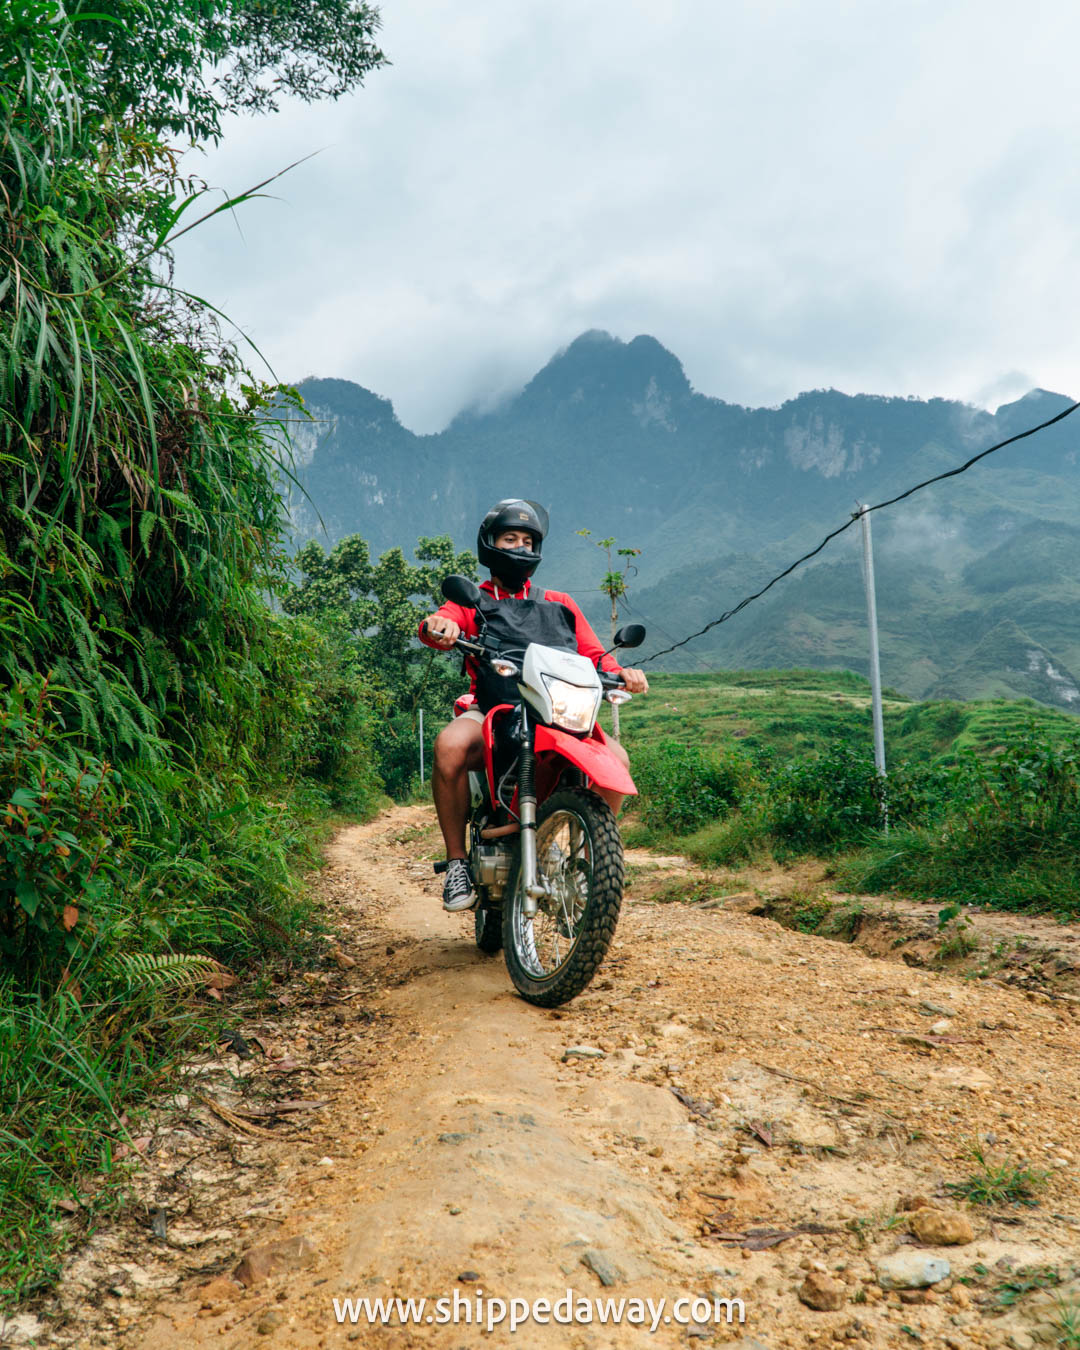 Best Ha GIang Loop Tours - Ha Giang Loop Easy Rider Tour - Ha Giang Loop By Car - Ha Giang Loop Dirtbike Tour